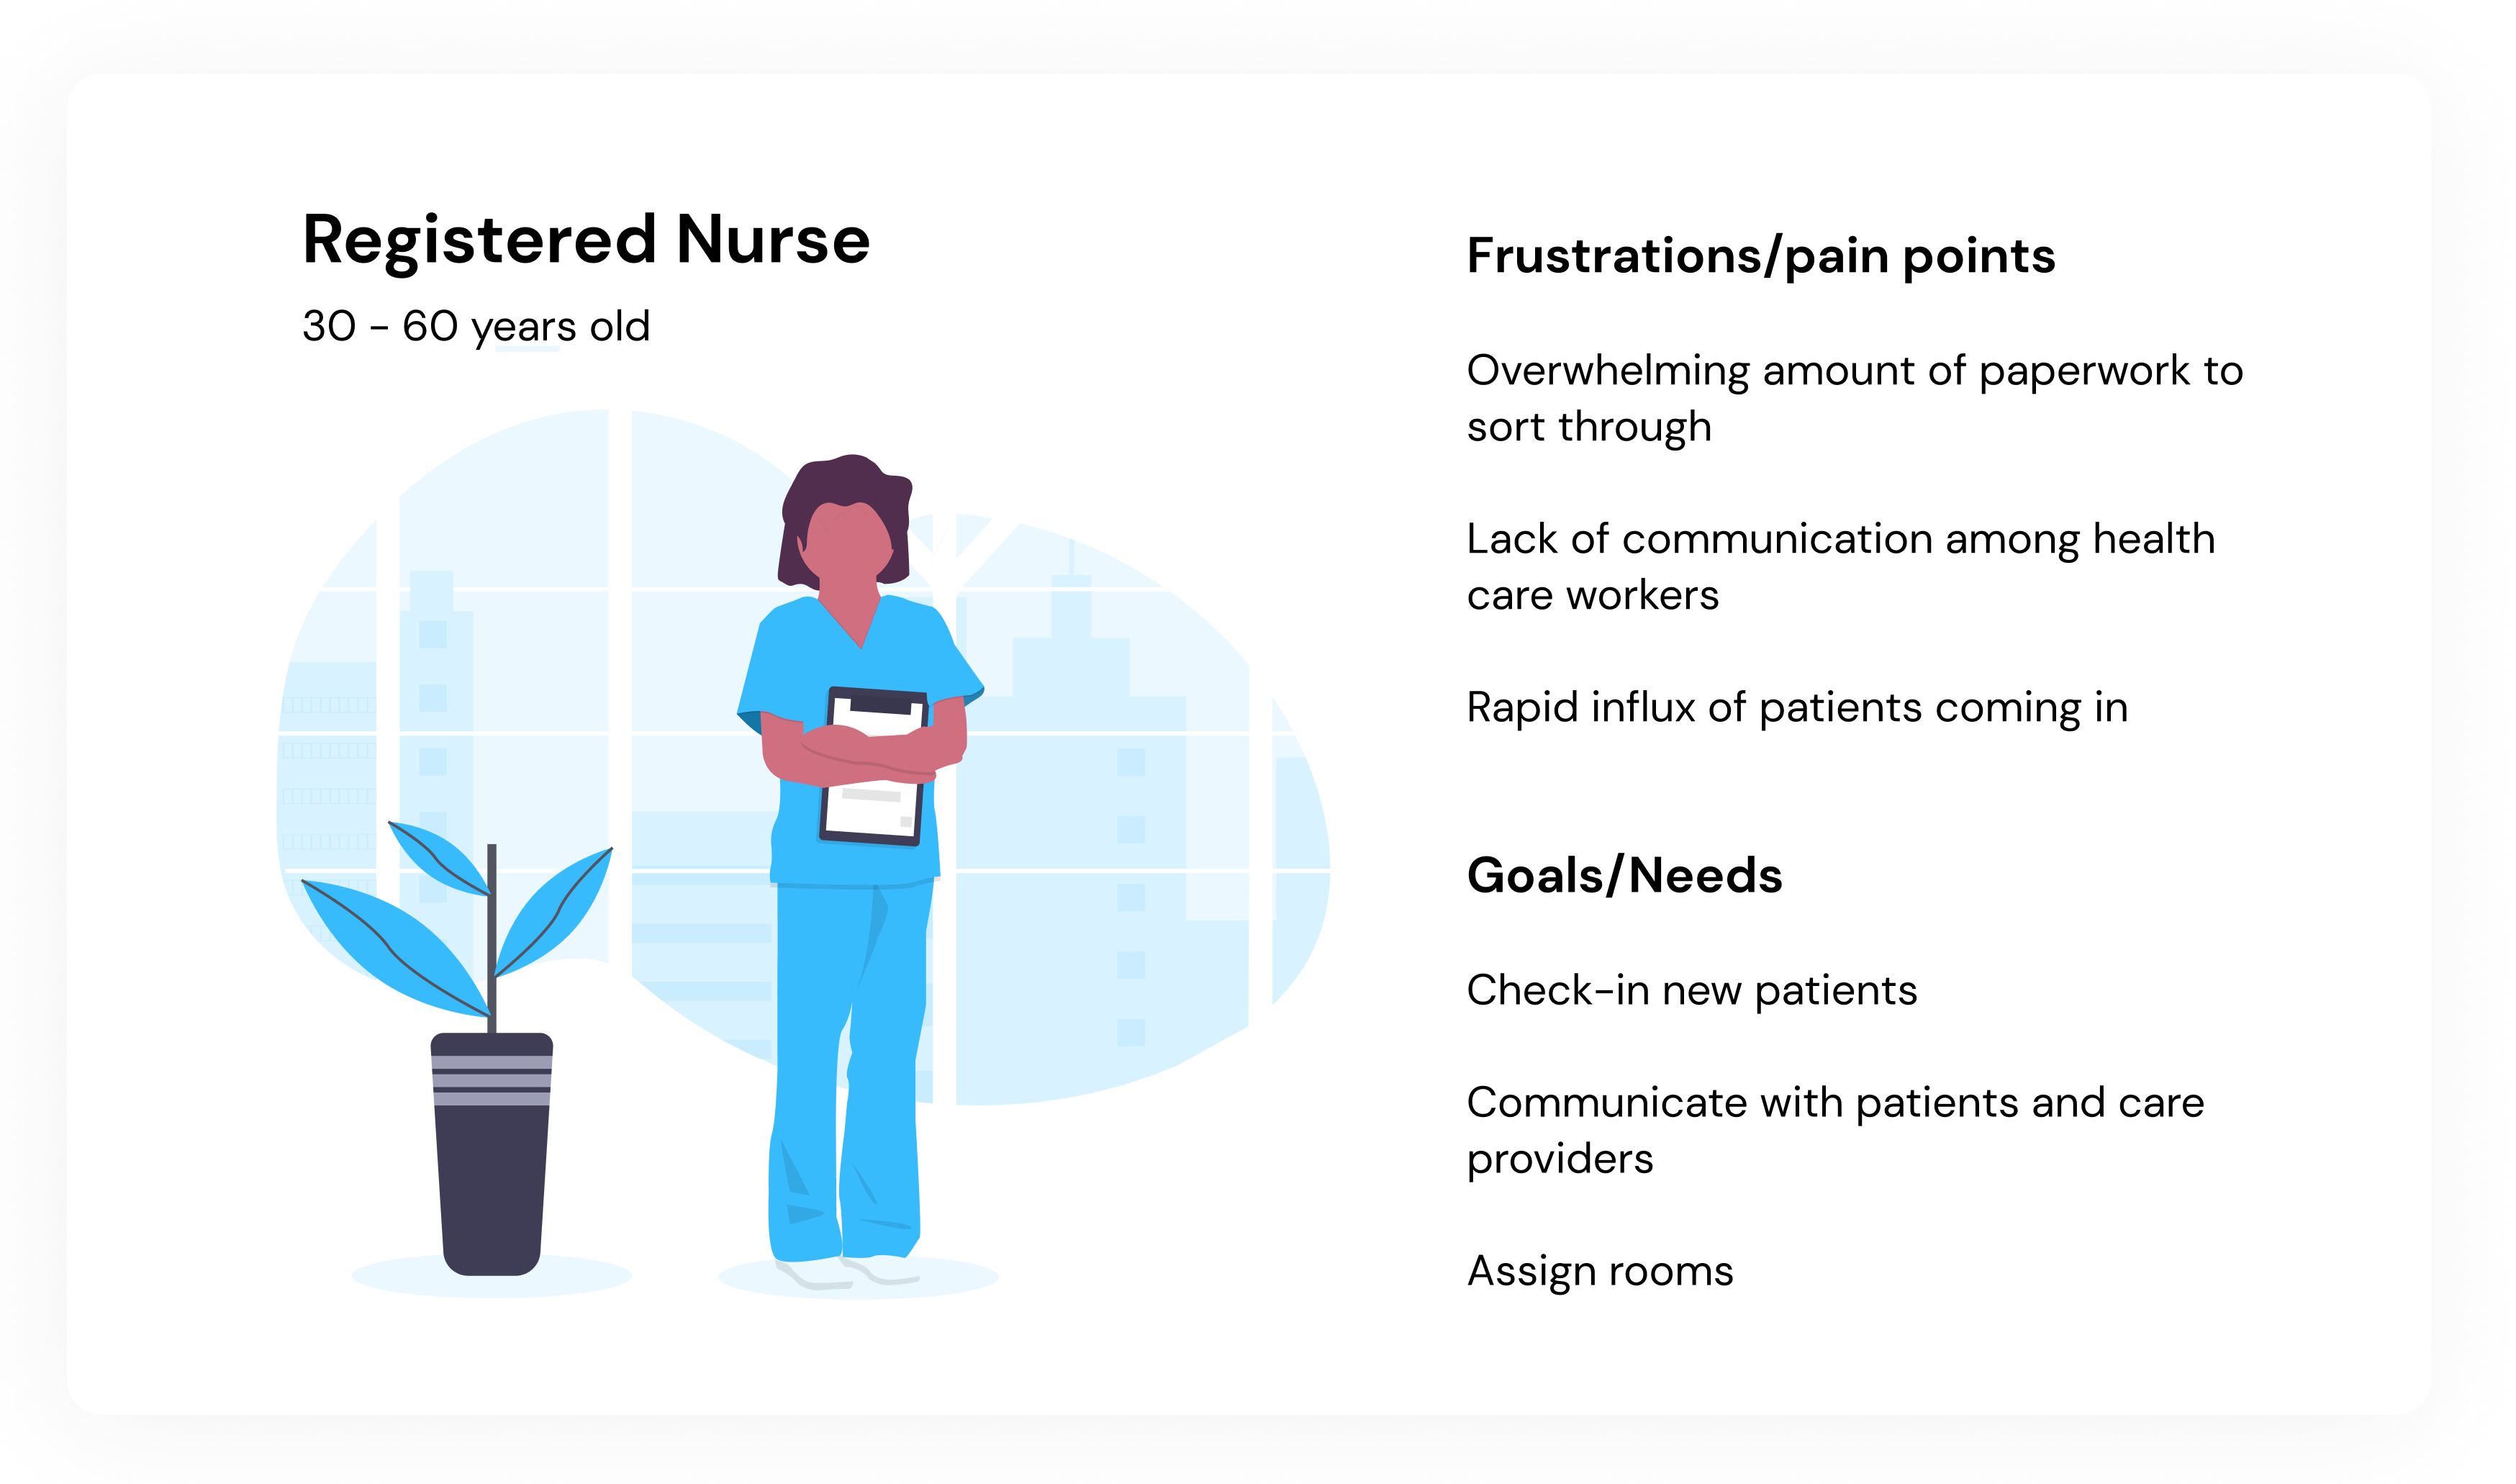 nurse persona image